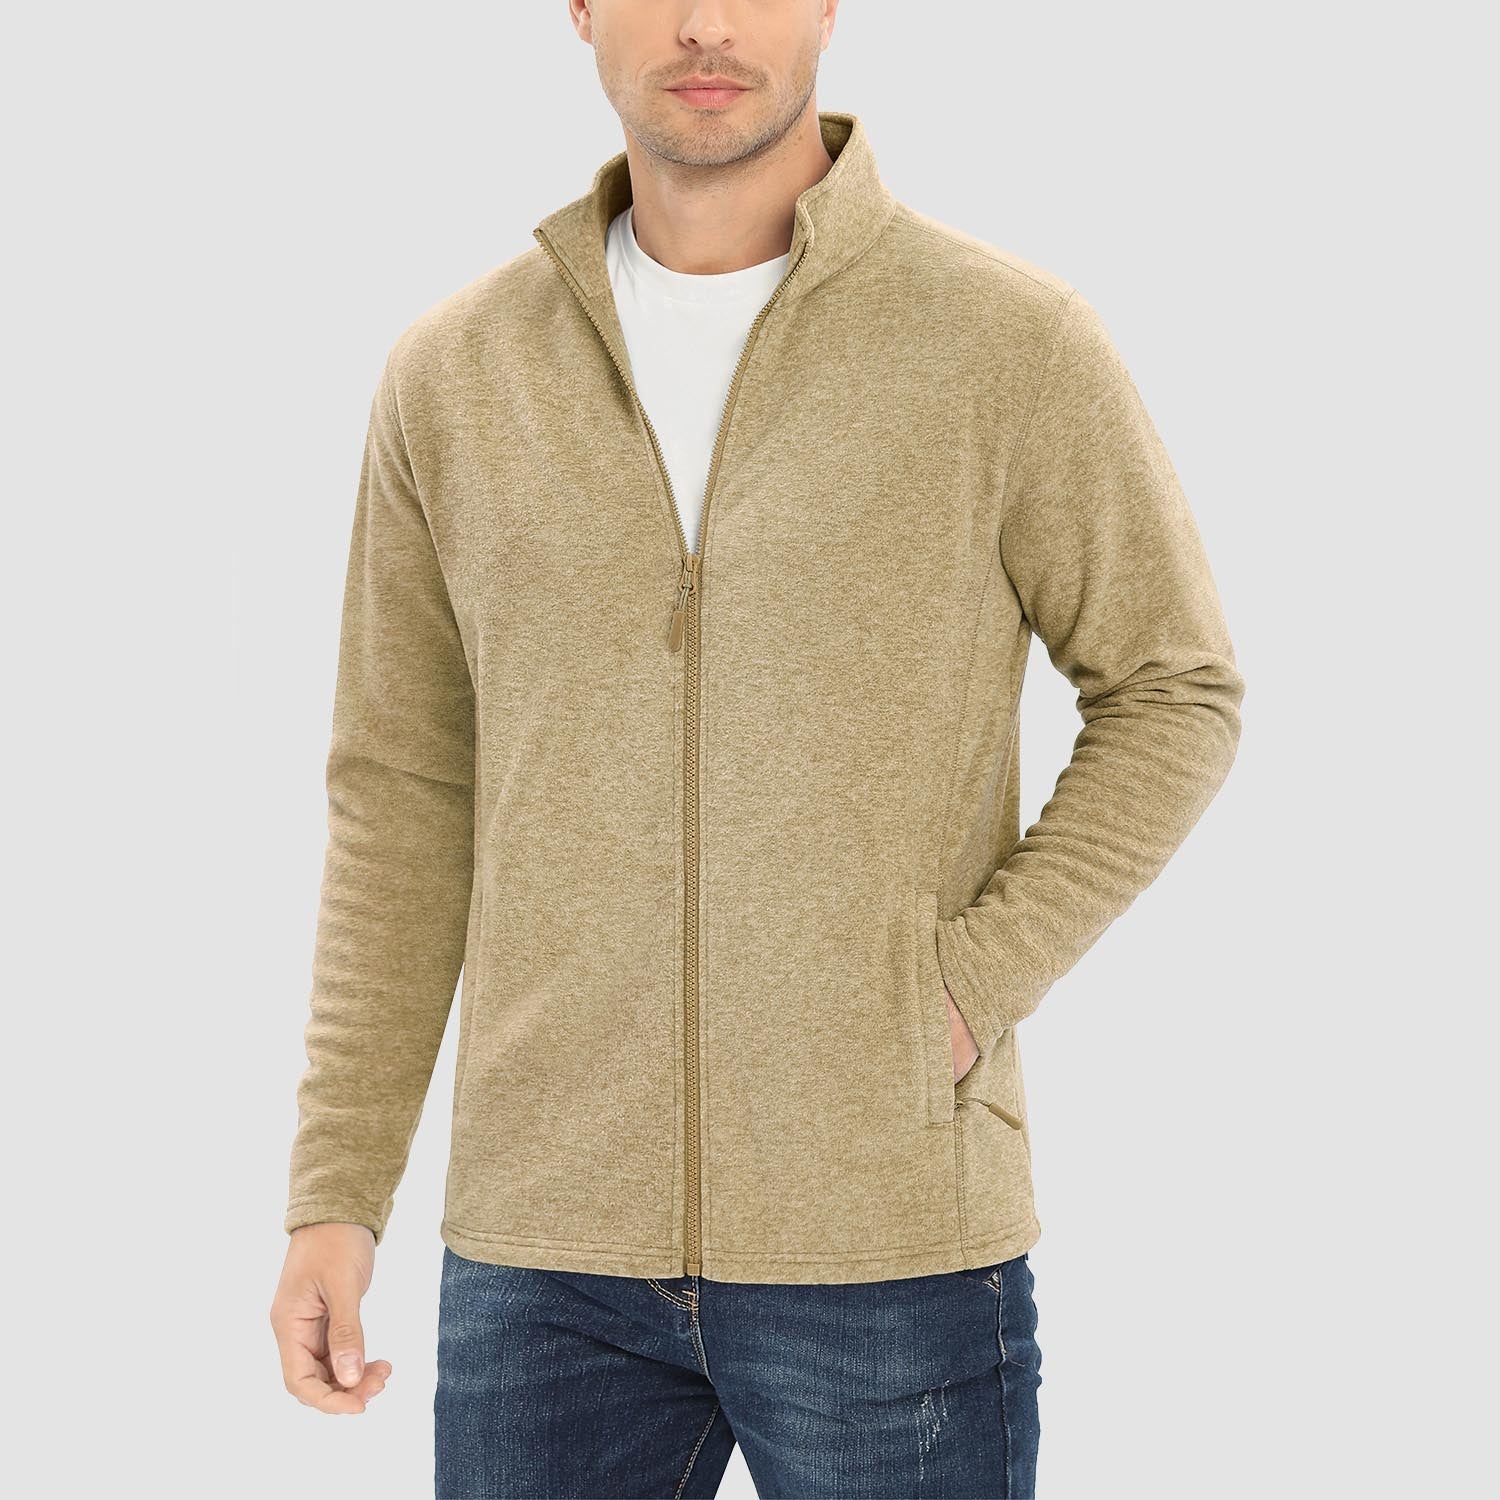 Men's Fleece Jacket Zip Up Stand Collar Coat